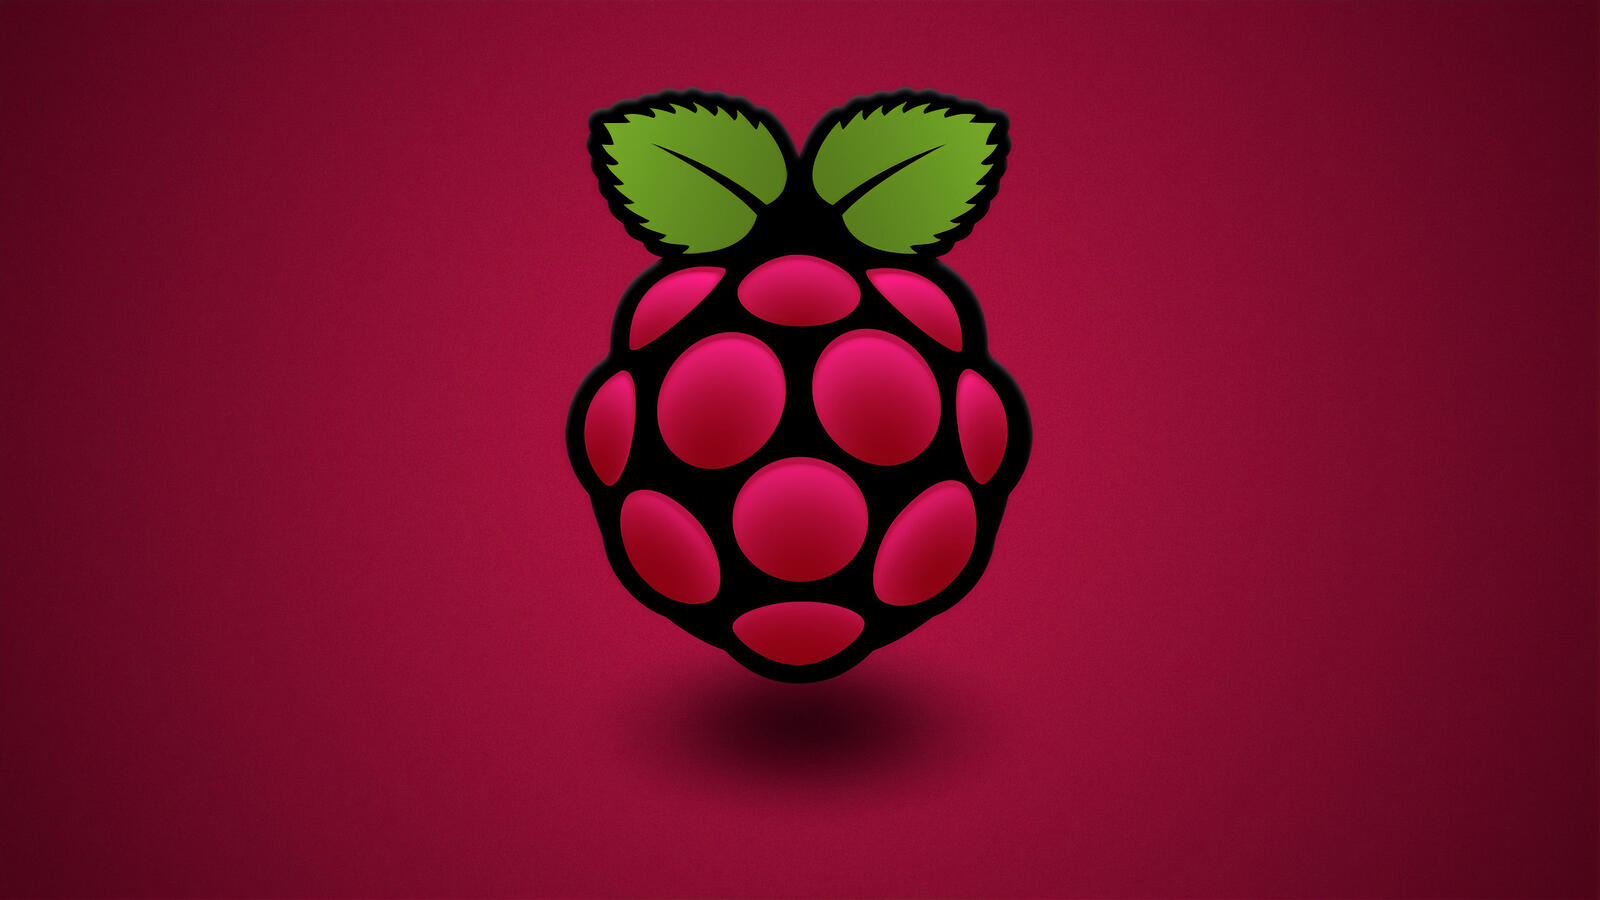 Free photo The raspberry pi logo